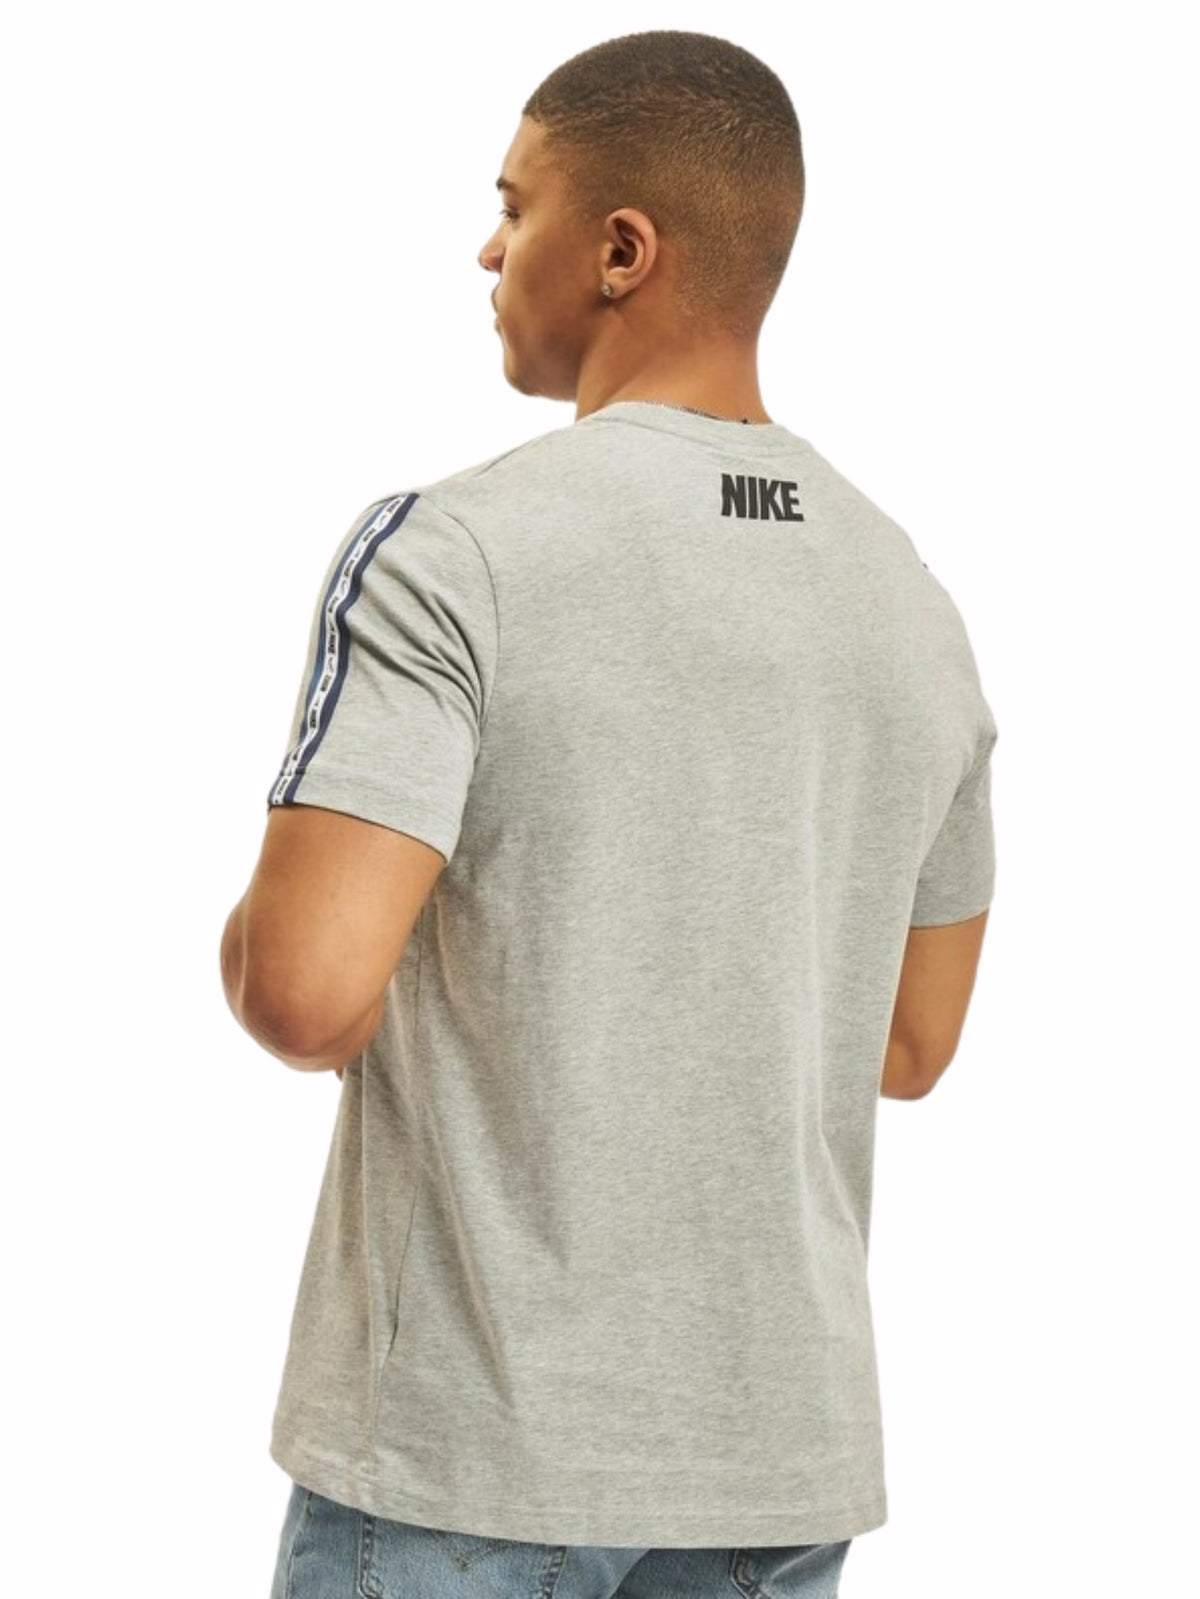 NIKE_TSHIRT_DM4685 Nike | Mens Repeat T-Shirt RAWDENIM RAWDENIM